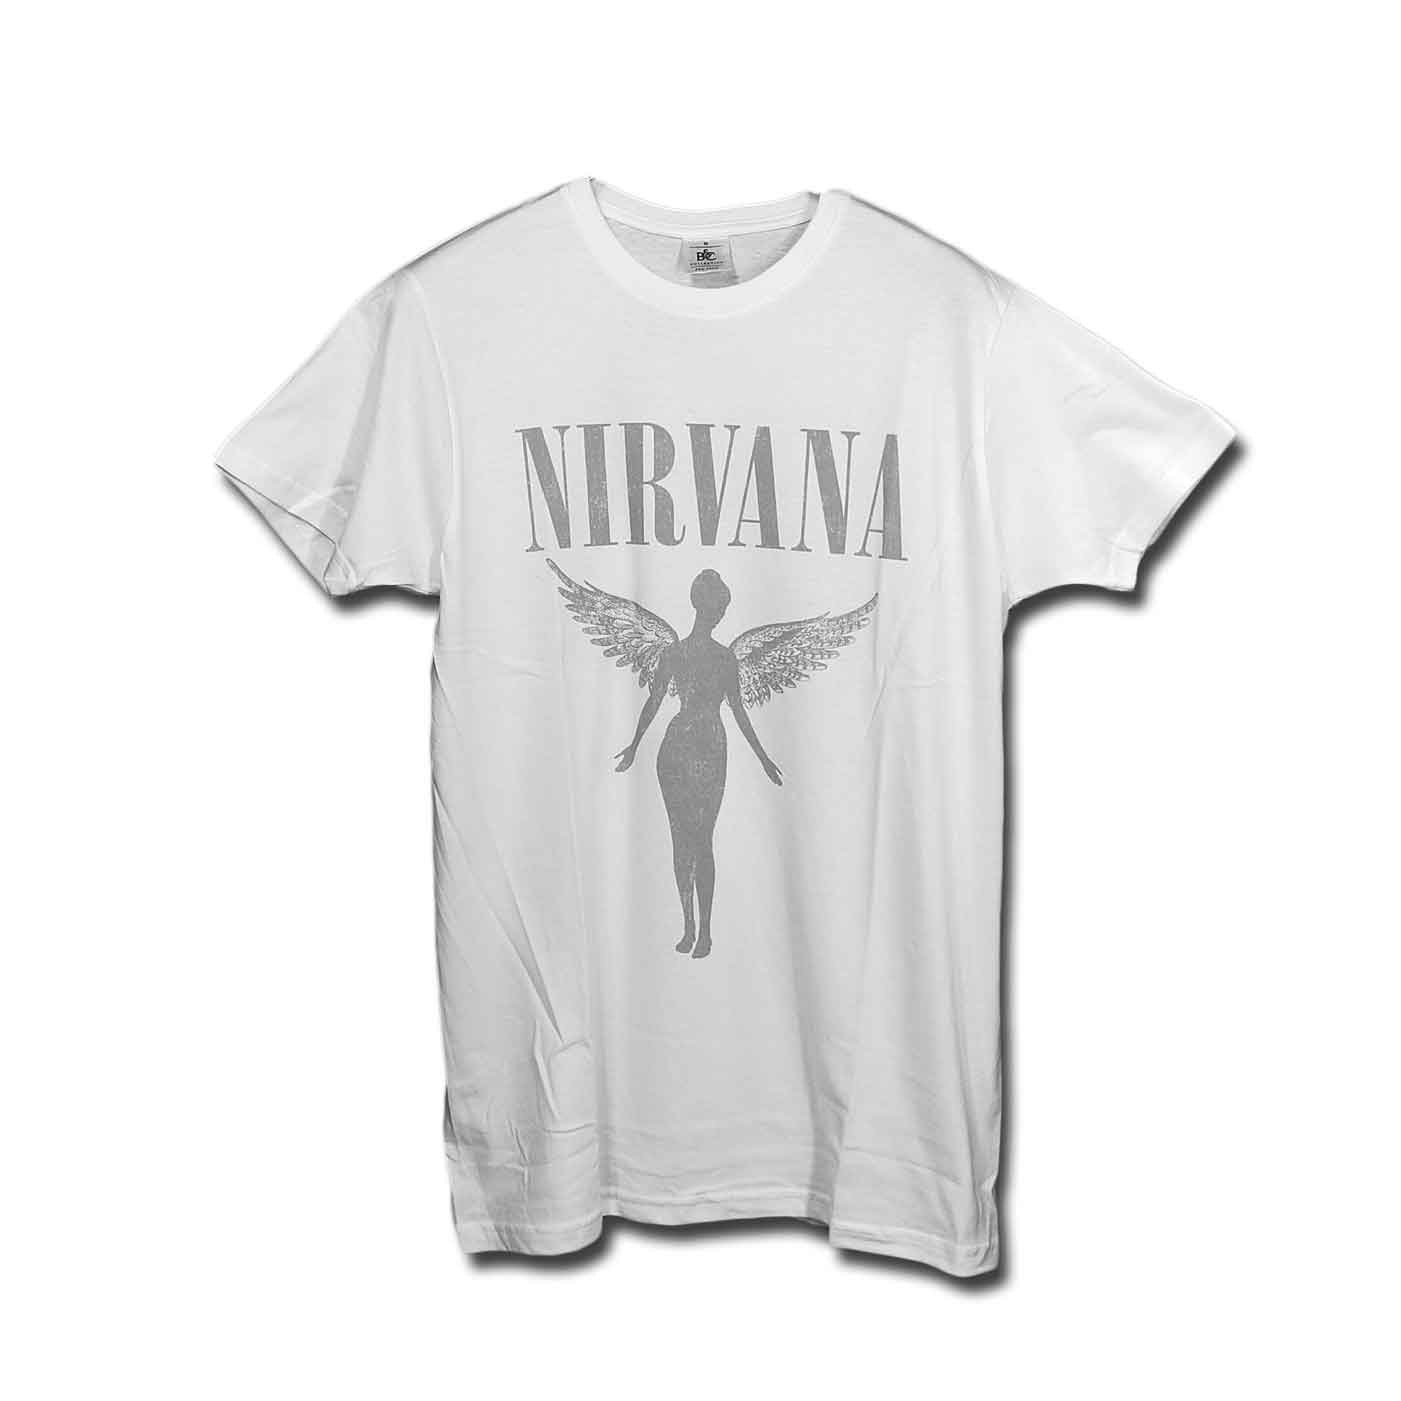 Nirvana バンドTシャツ ニルヴァーナ In Utero Tour WHITE - バンドT 